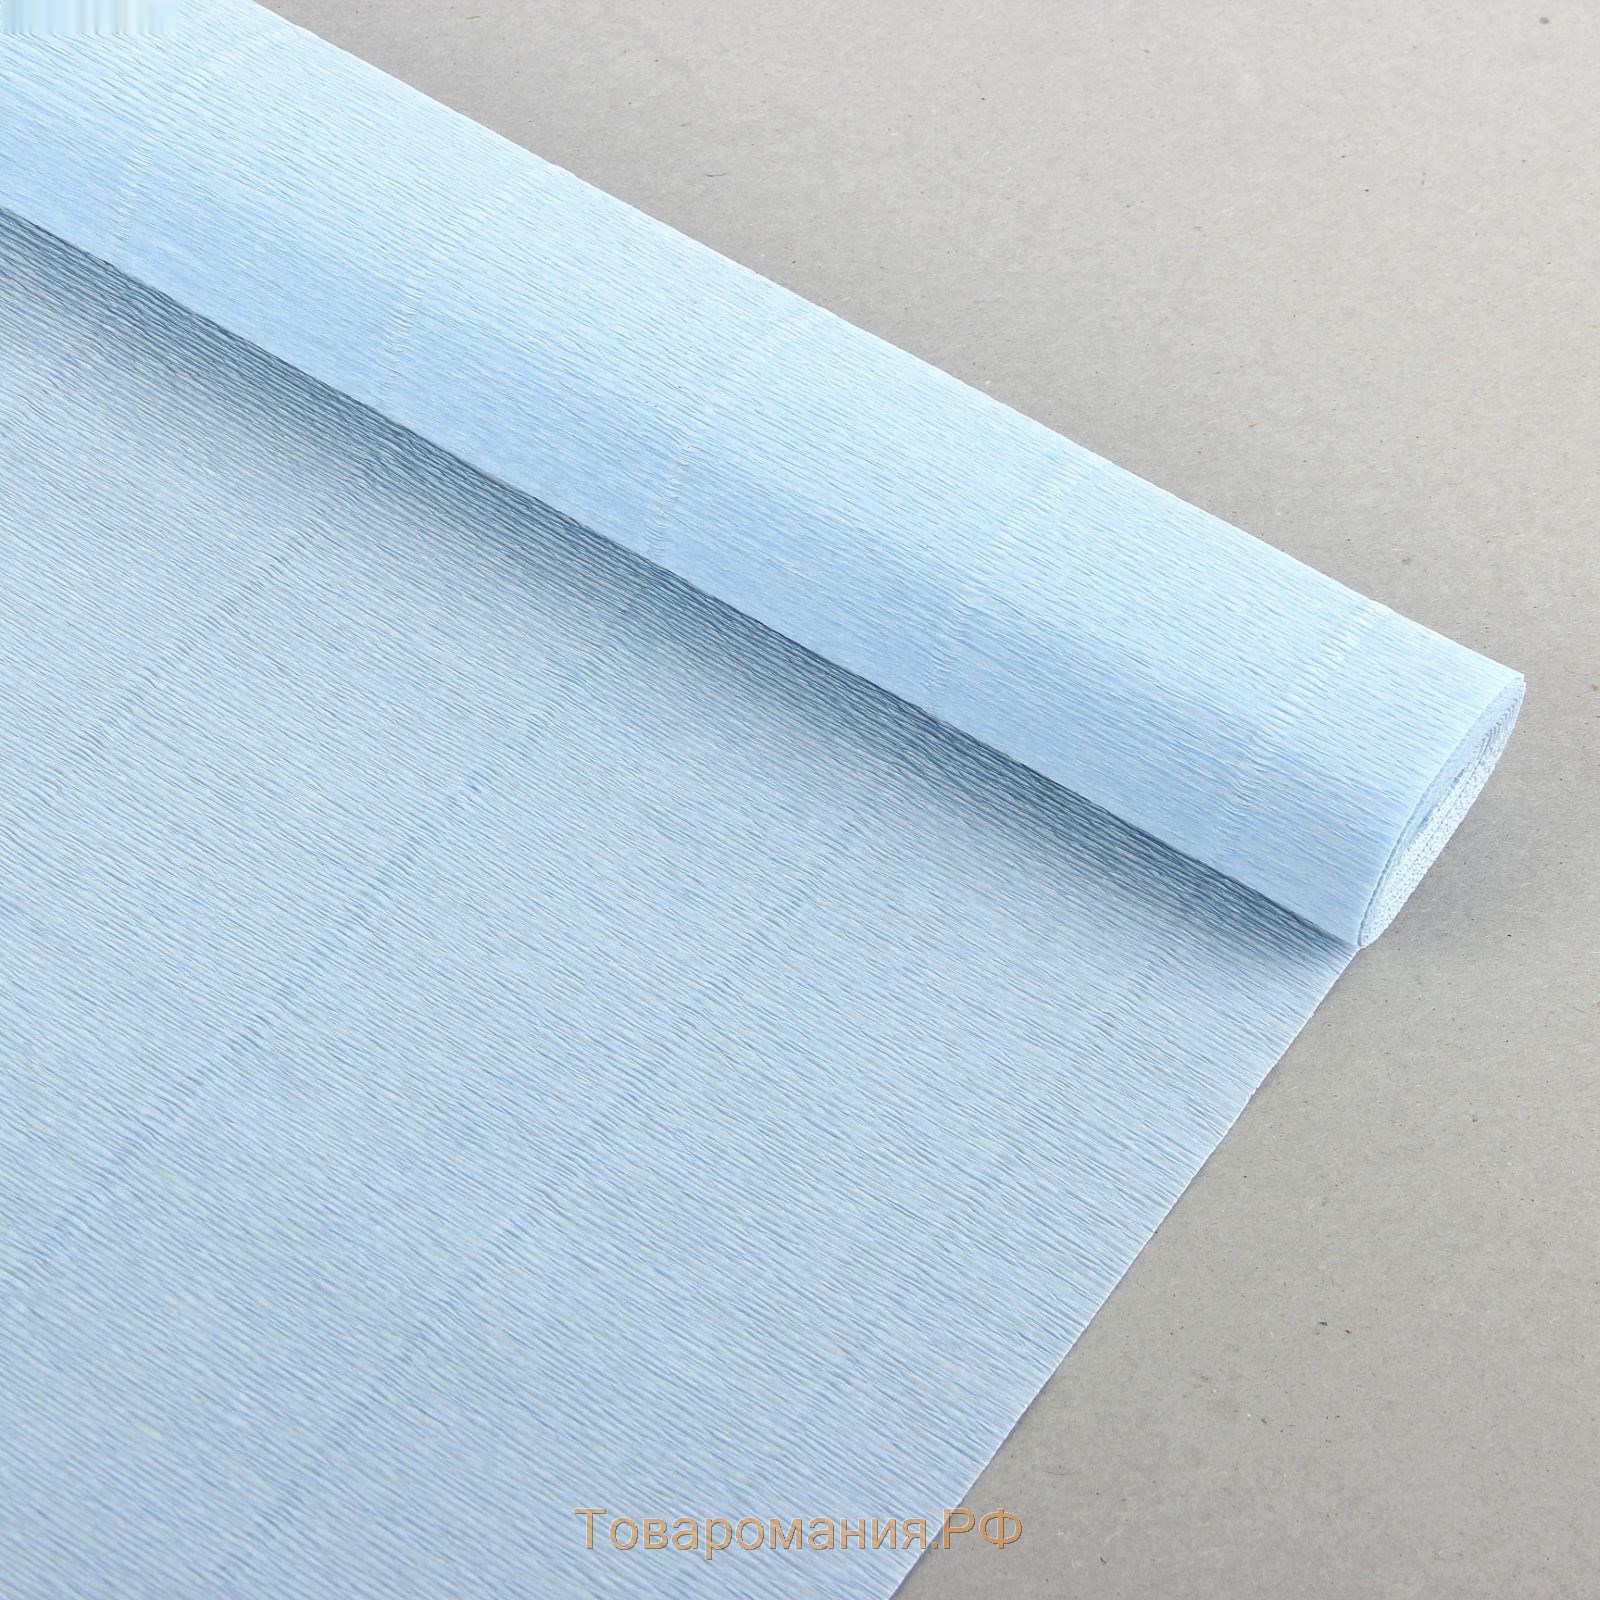 Бумага для упаковки и поделок, гофрированная, нежно-голубая, однотонная, двусторонняя, рулон 1 шт., 0,5 х 2,5 м